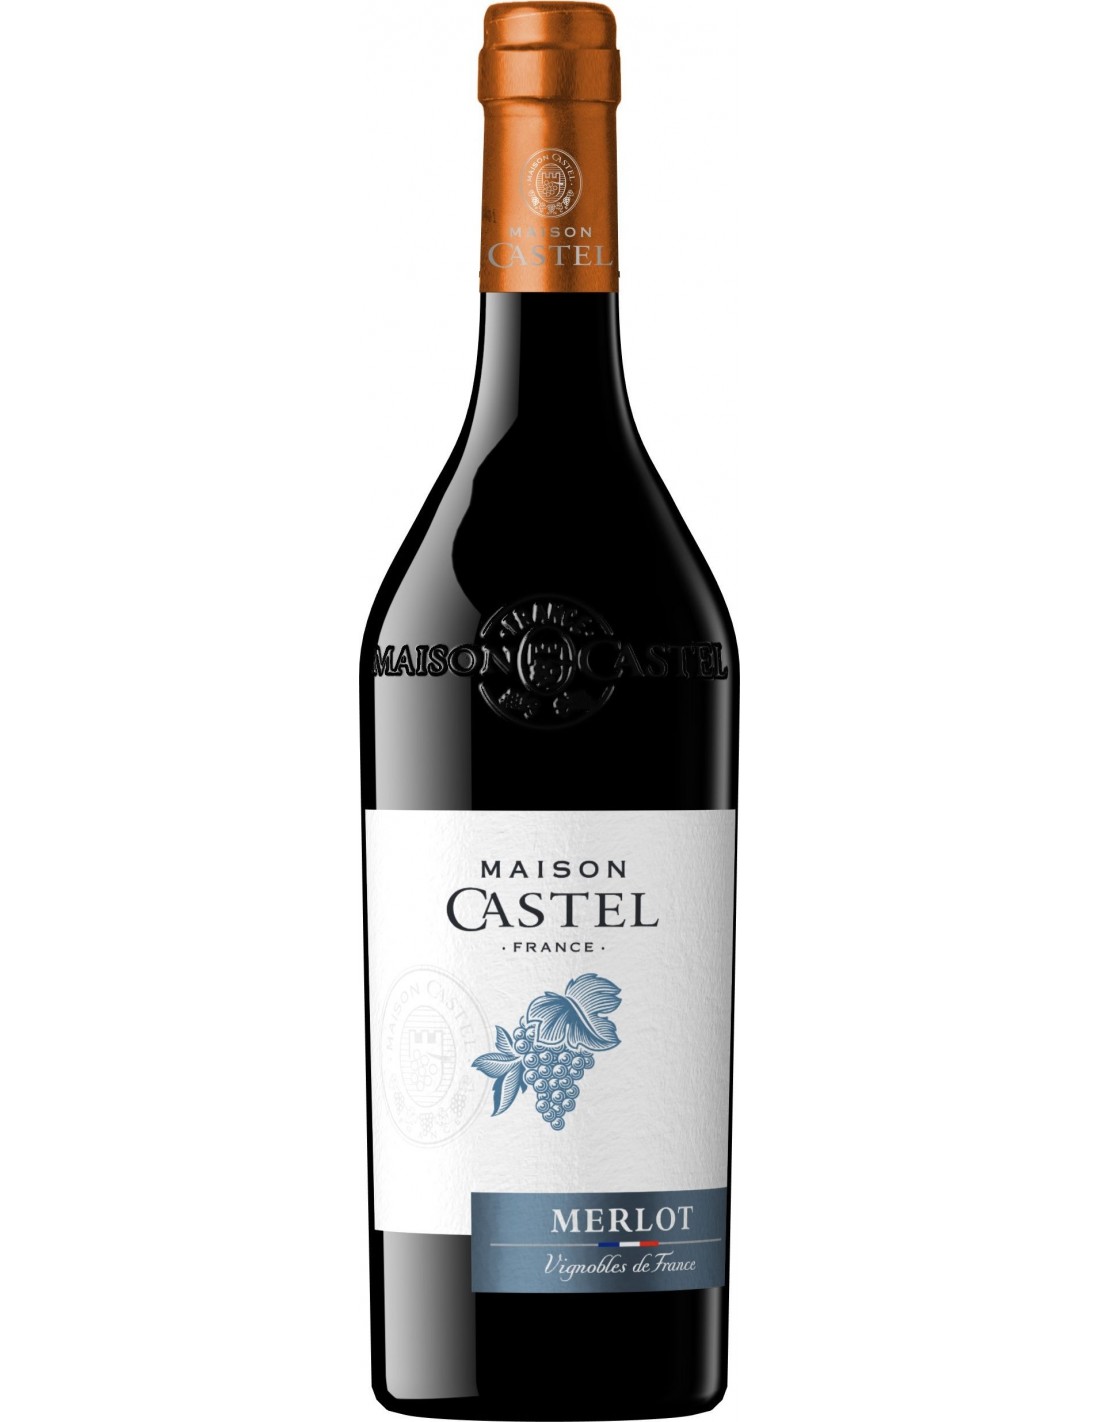 Vin rosu sec, Merlot, Maison Castel Bordeaux Pays d’Oc, 12.5% alc., 0.75L, Franta alcooldiscount.ro